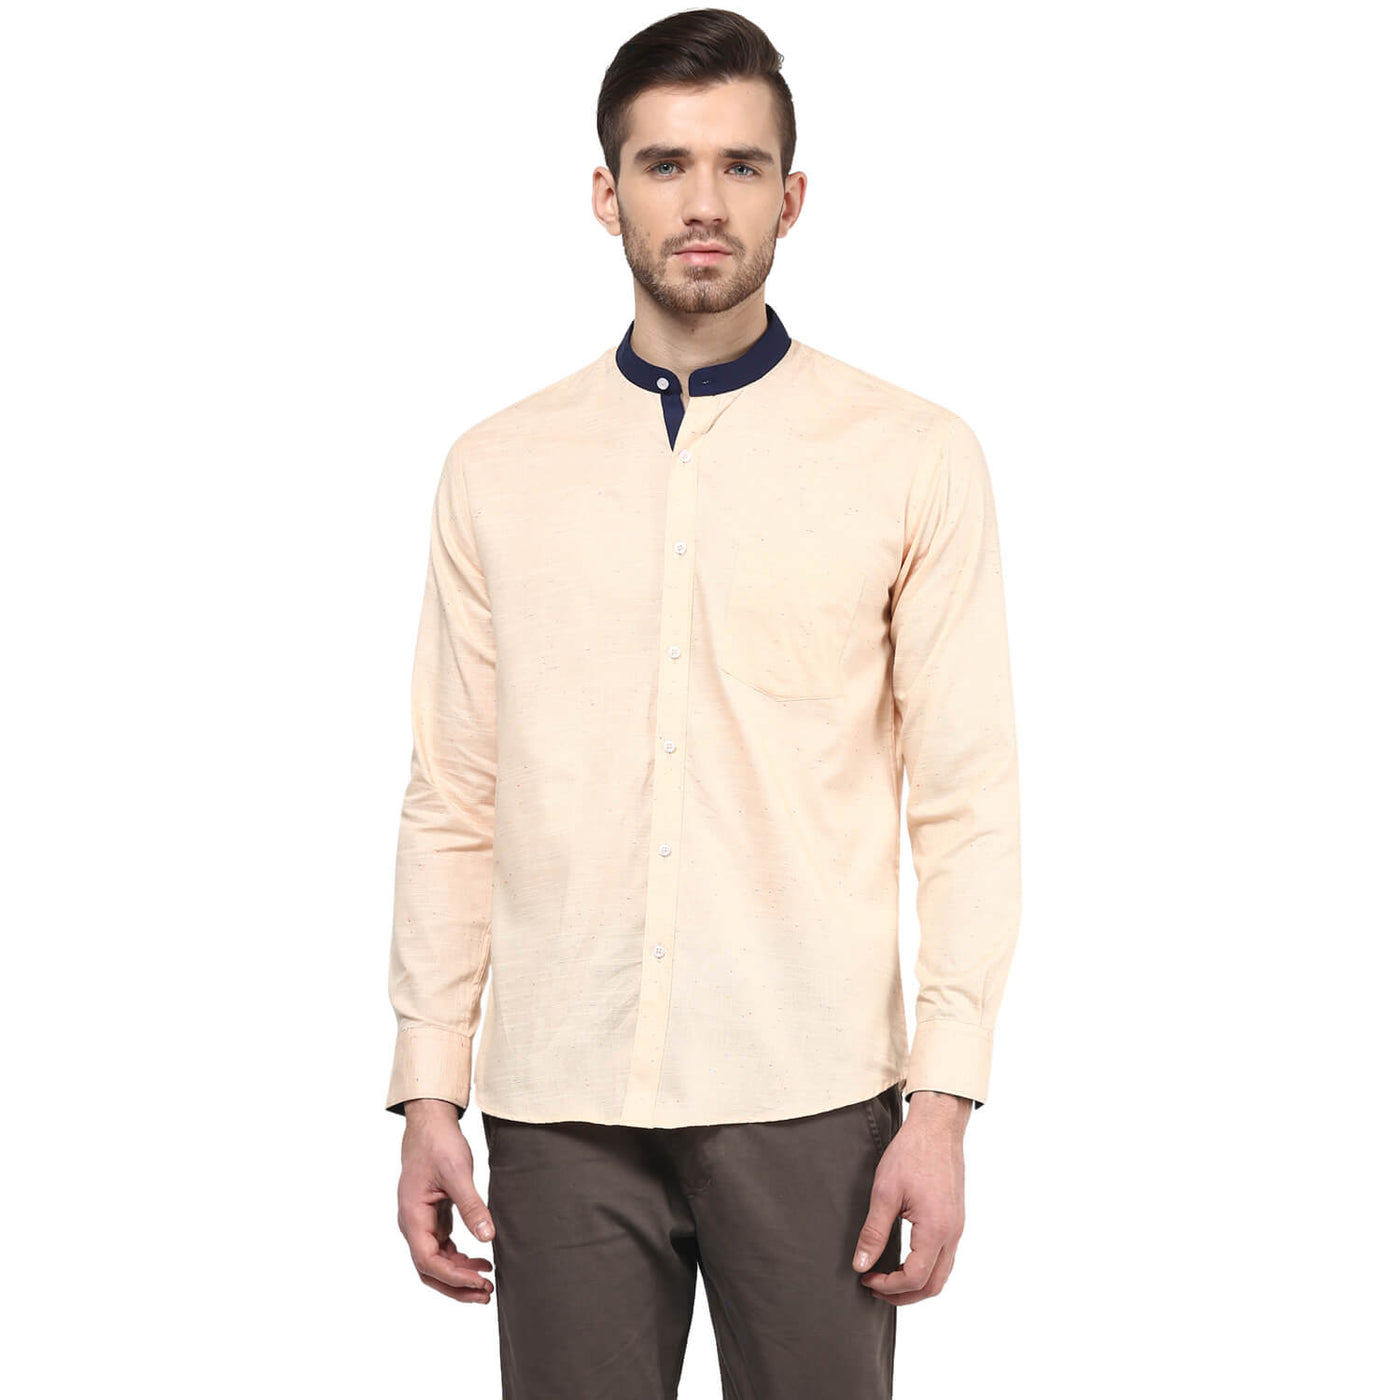 Premium 100% Cotton Shirt Peach Color